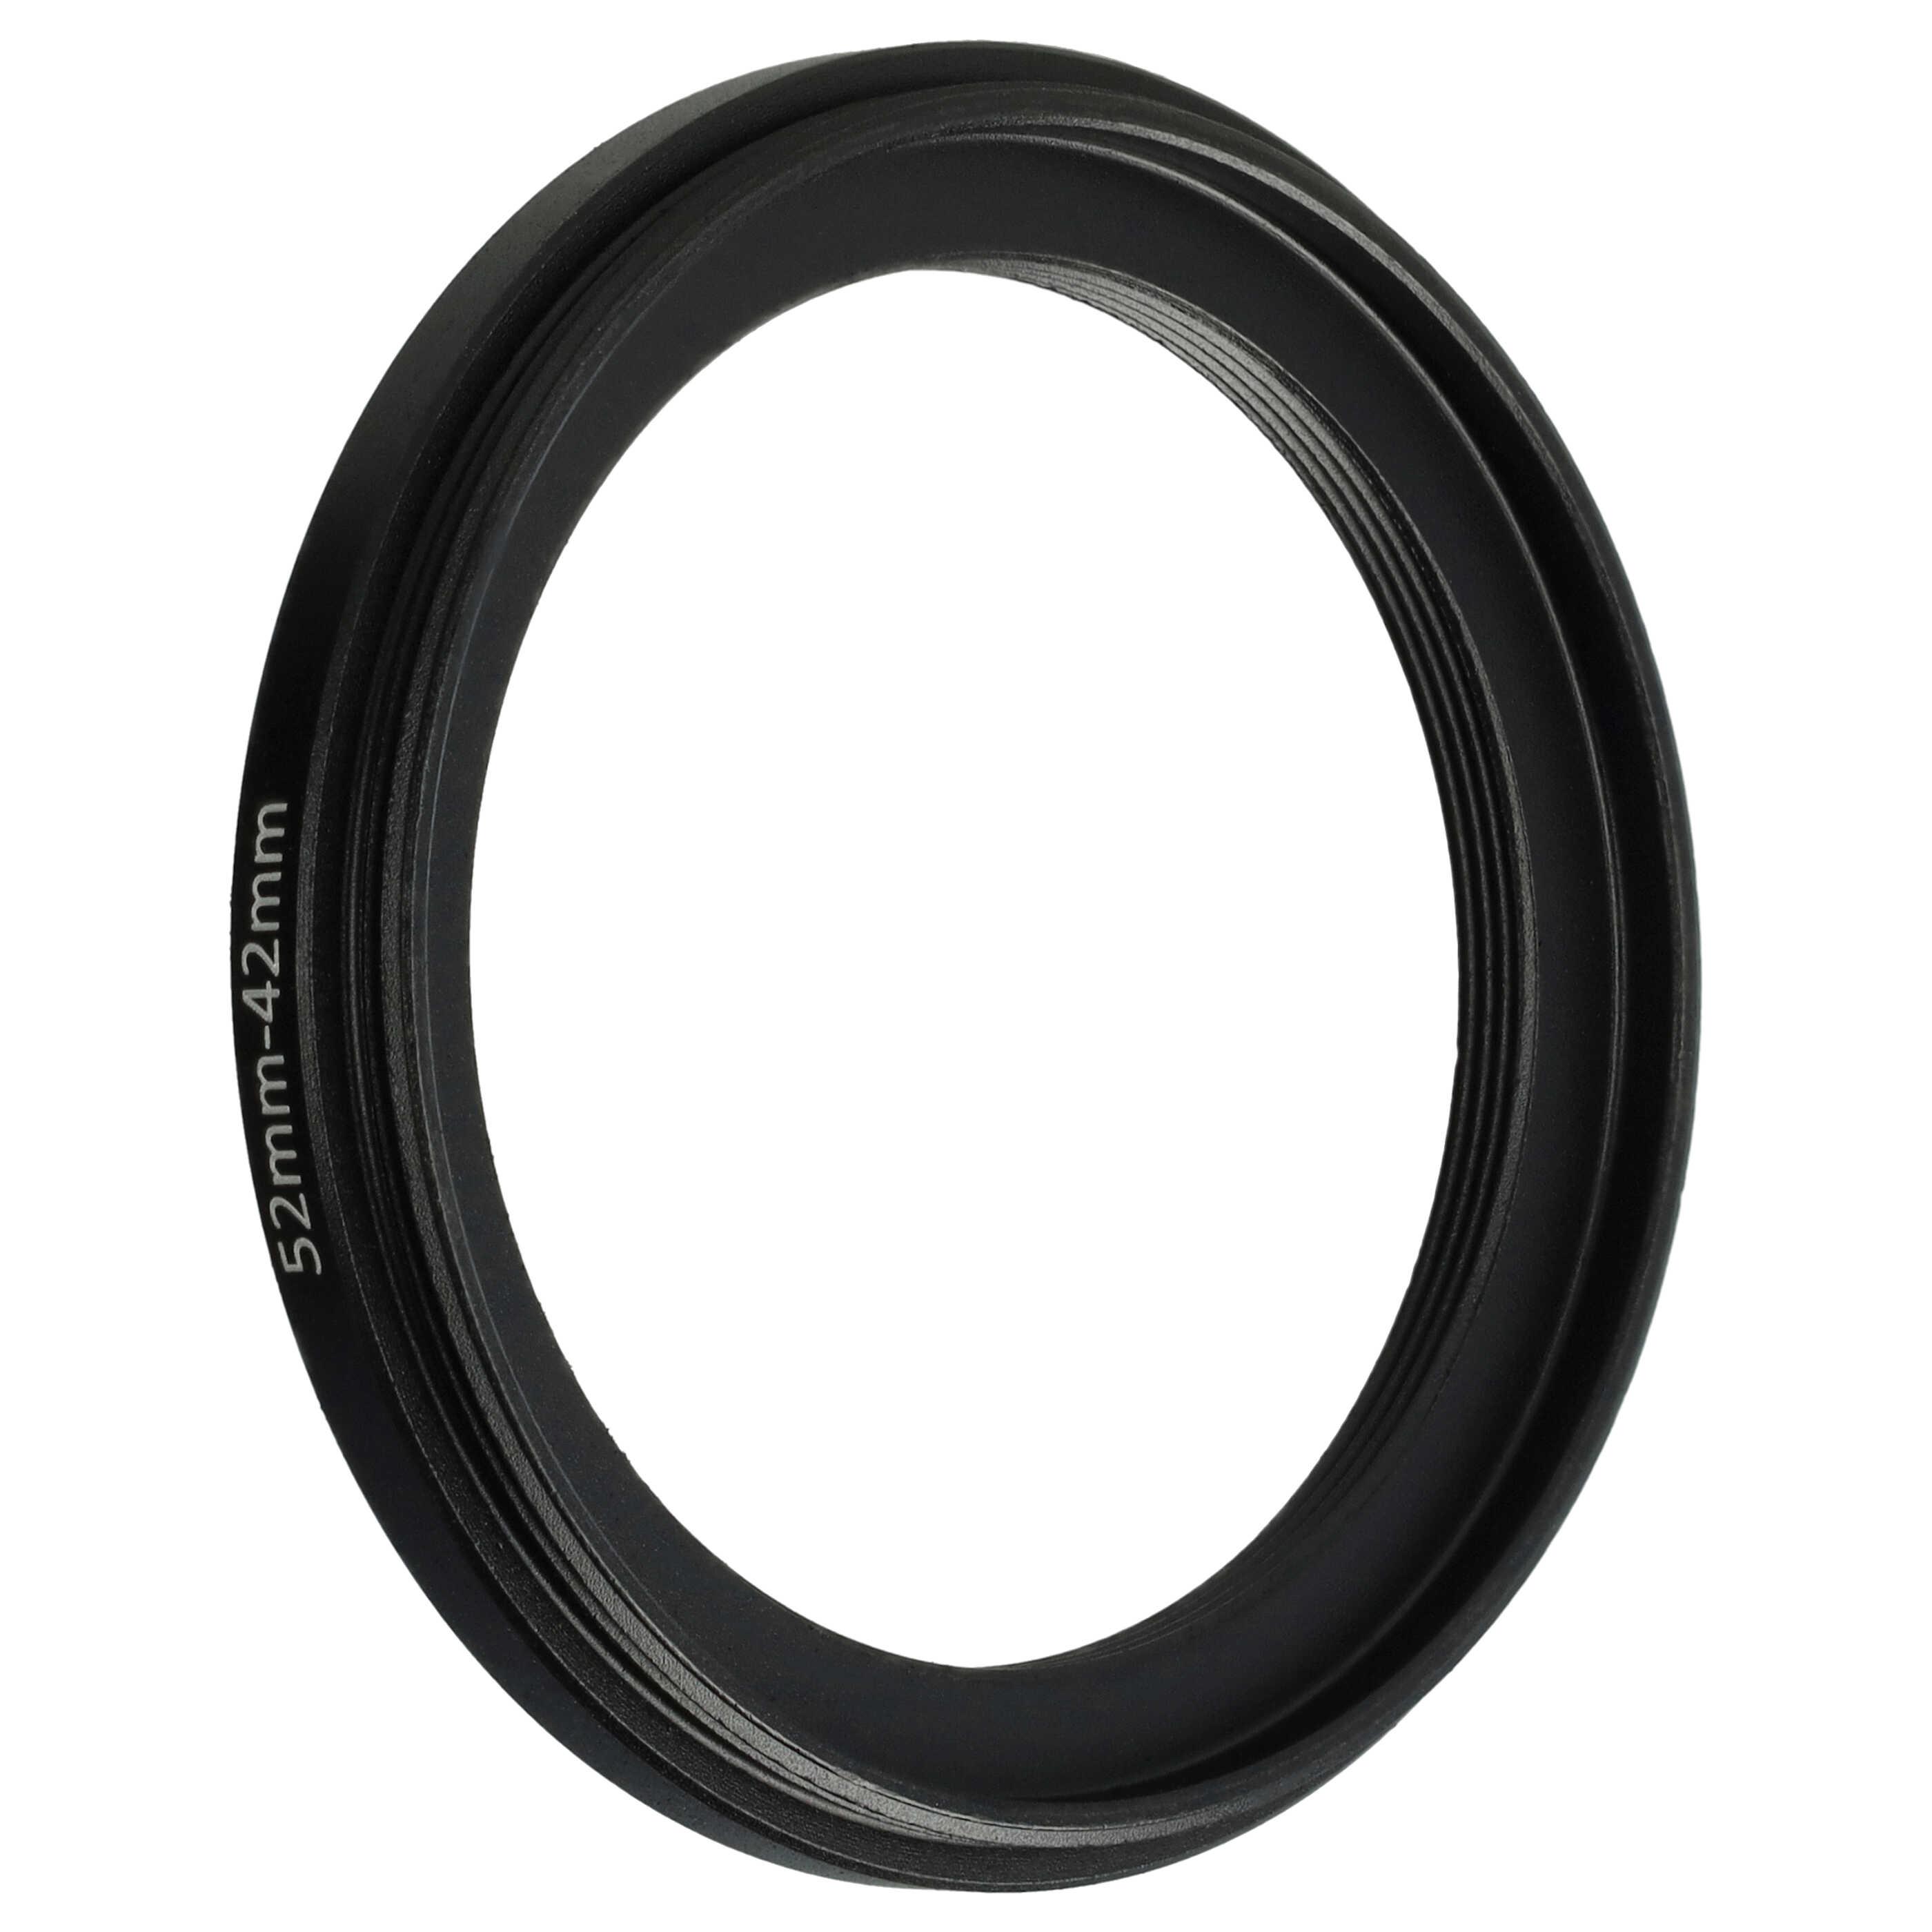 Step-Down-Ring Adapter von 52 mm auf 42 mm passend für Kamera Objektiv - Filteradapter, Metall, schwarz